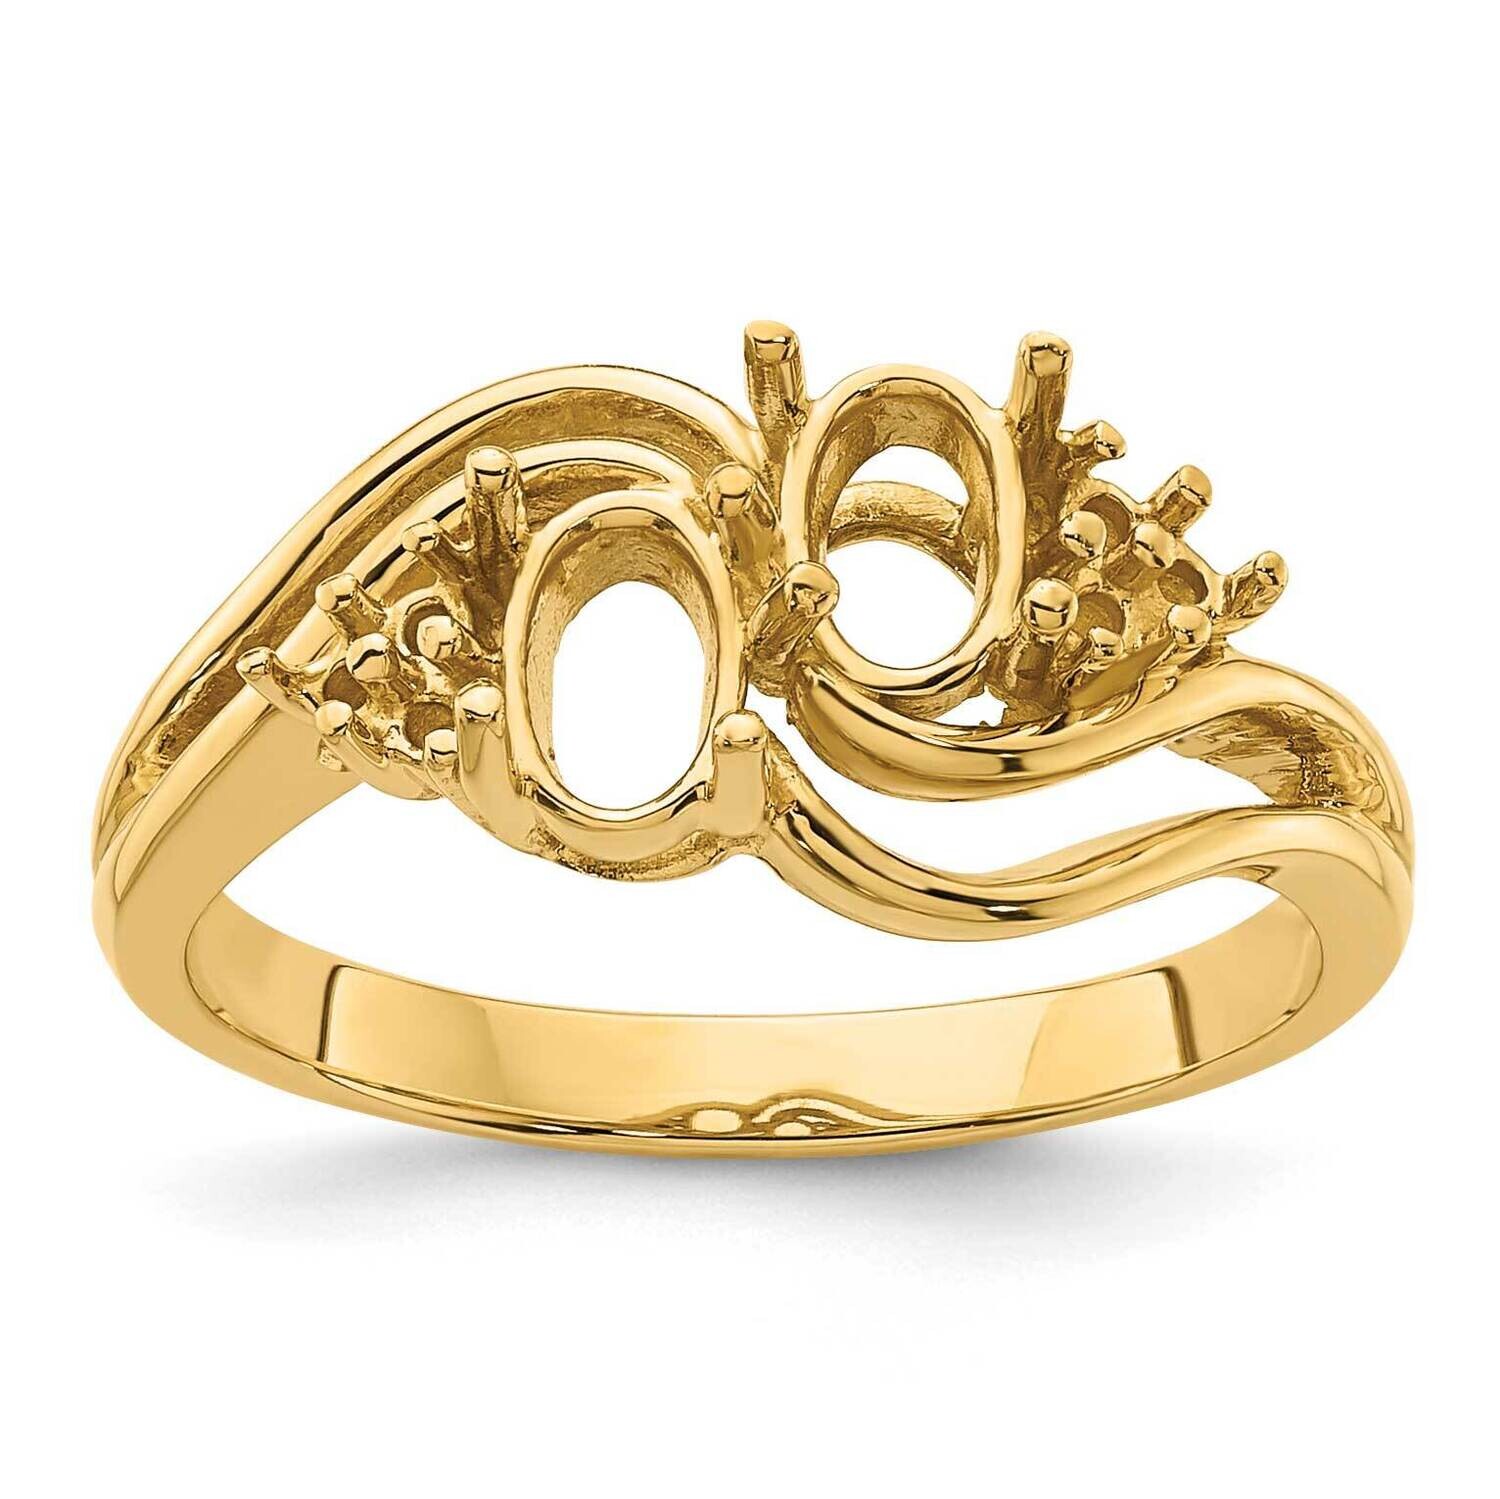 Diamond & Gemstone Ring Mounting 14k Gold Y4617